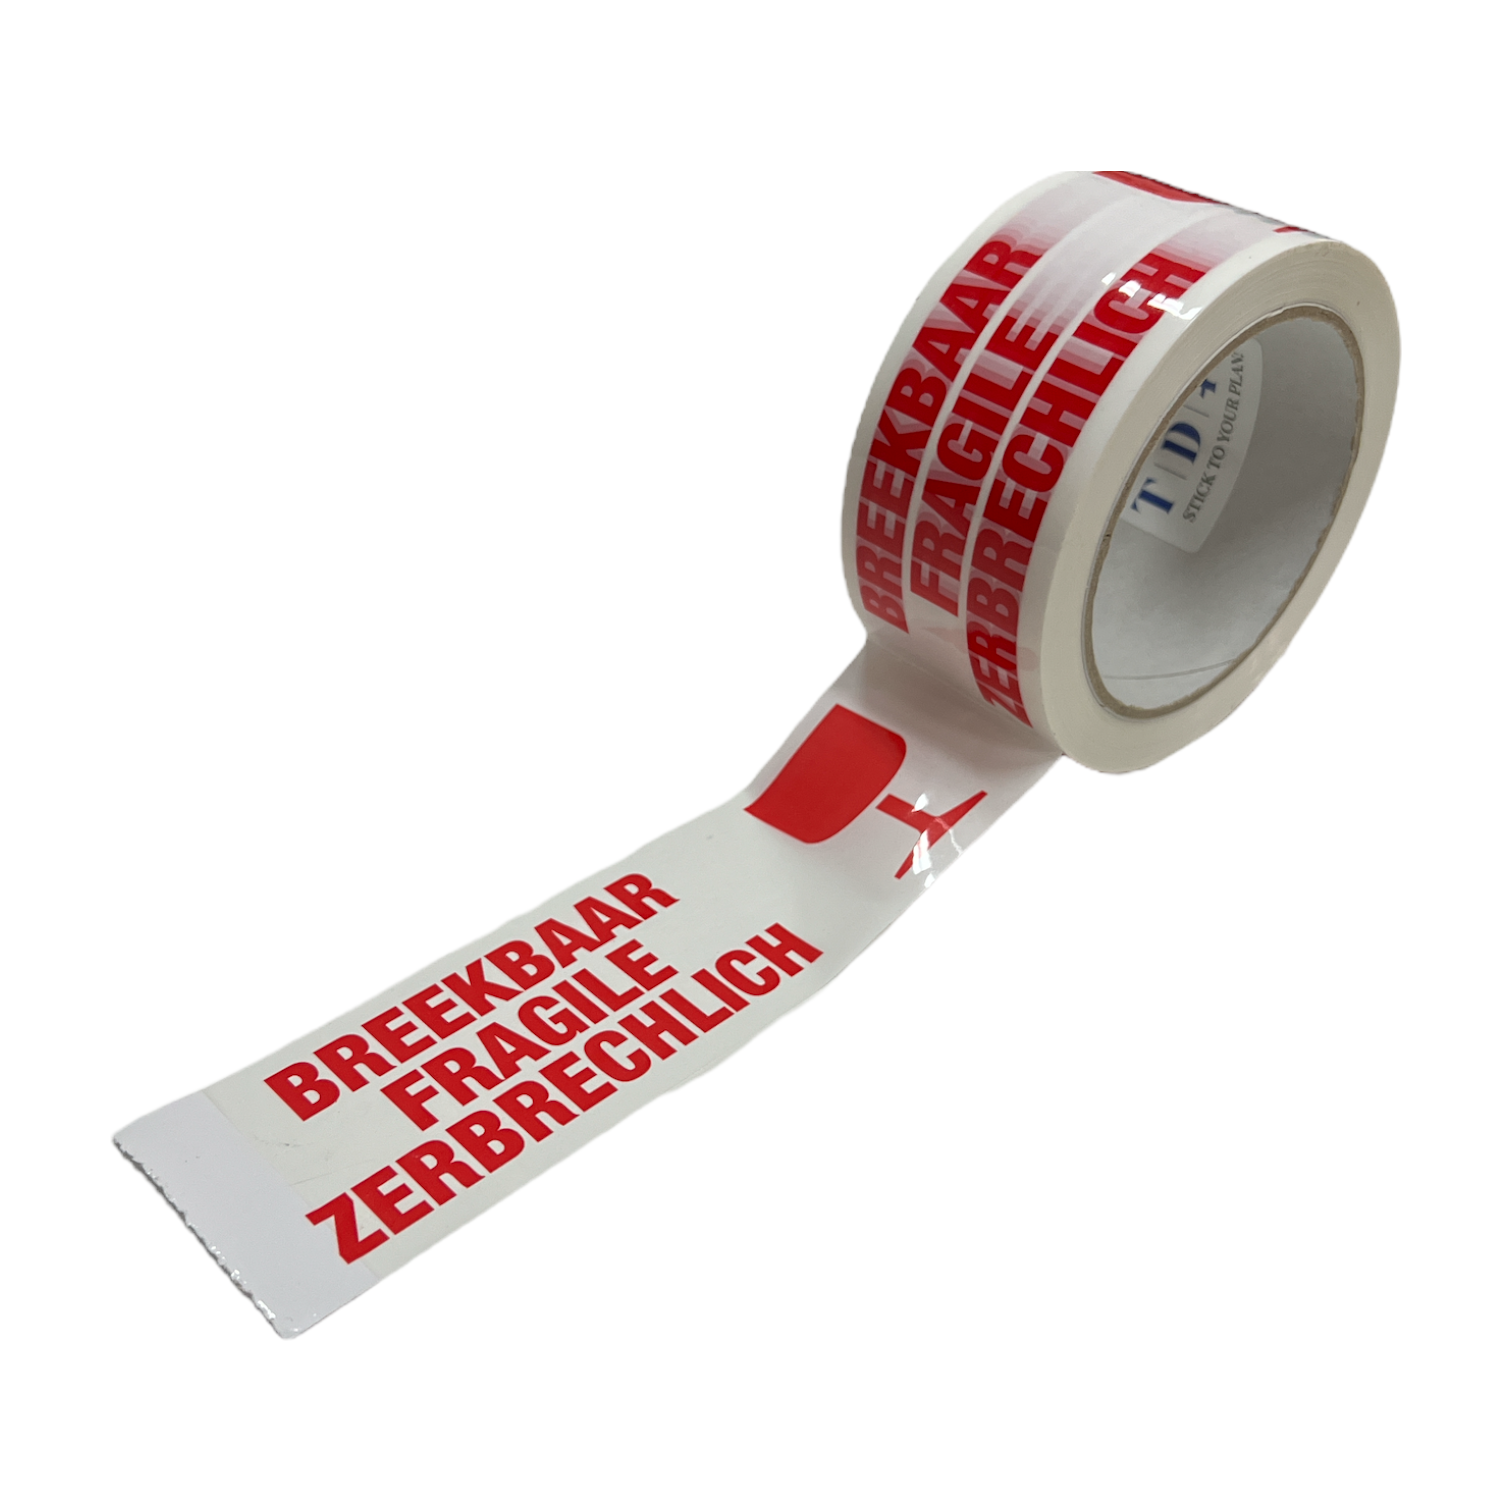 TD47 Verpakkingstape Breekbaar / Fragile / Zerbrechlich x 66m Wit - Tape-Deal.com